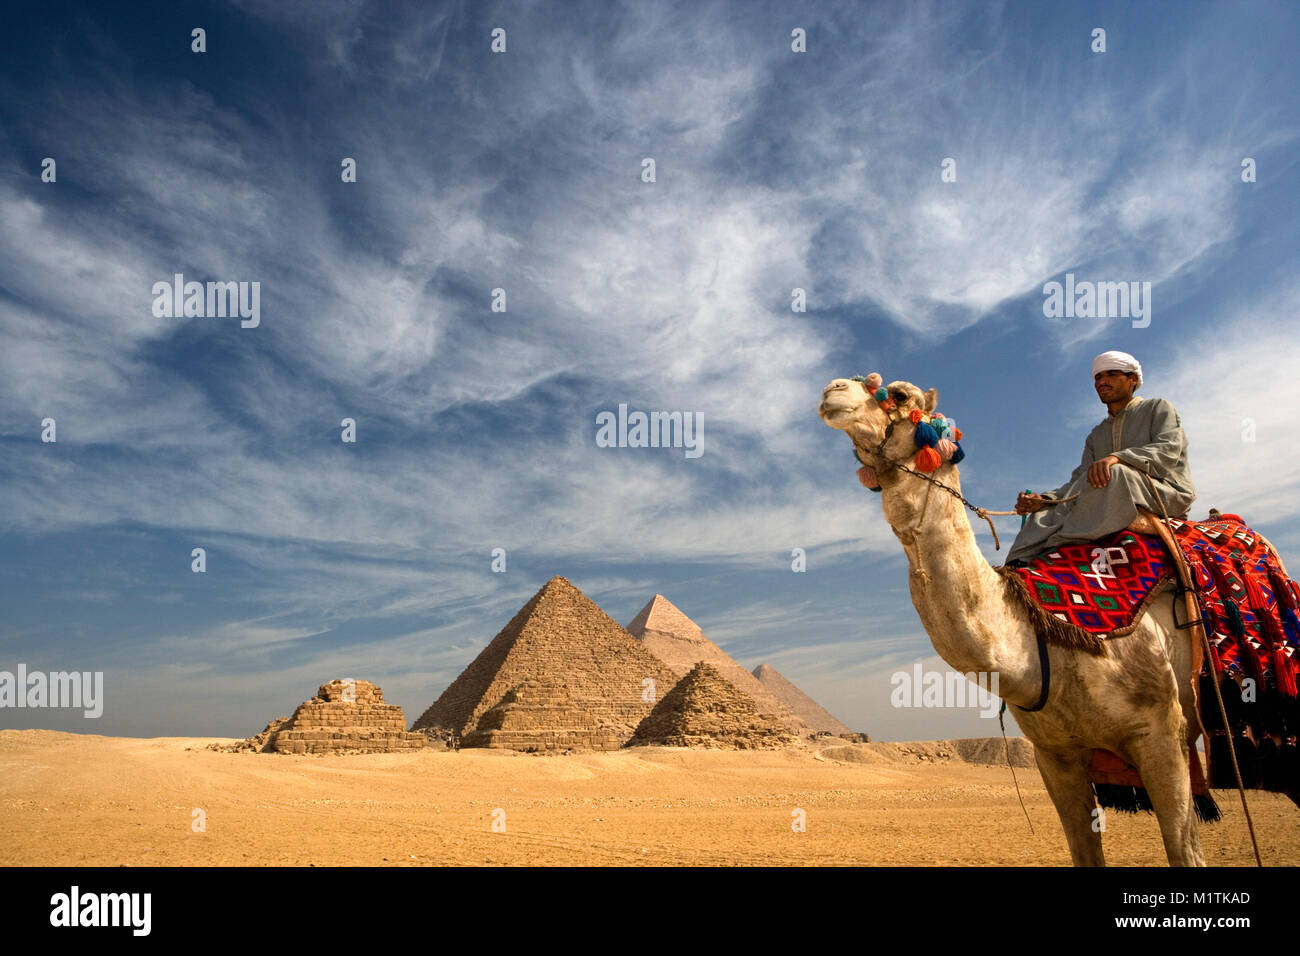 L'Egitto, al Cairo. Piramidi di Giza o Giza. L'uomo, camel driver sul cammello nel deserto vicino a piramidi. Unesco World Heritage Site. Foto Stock